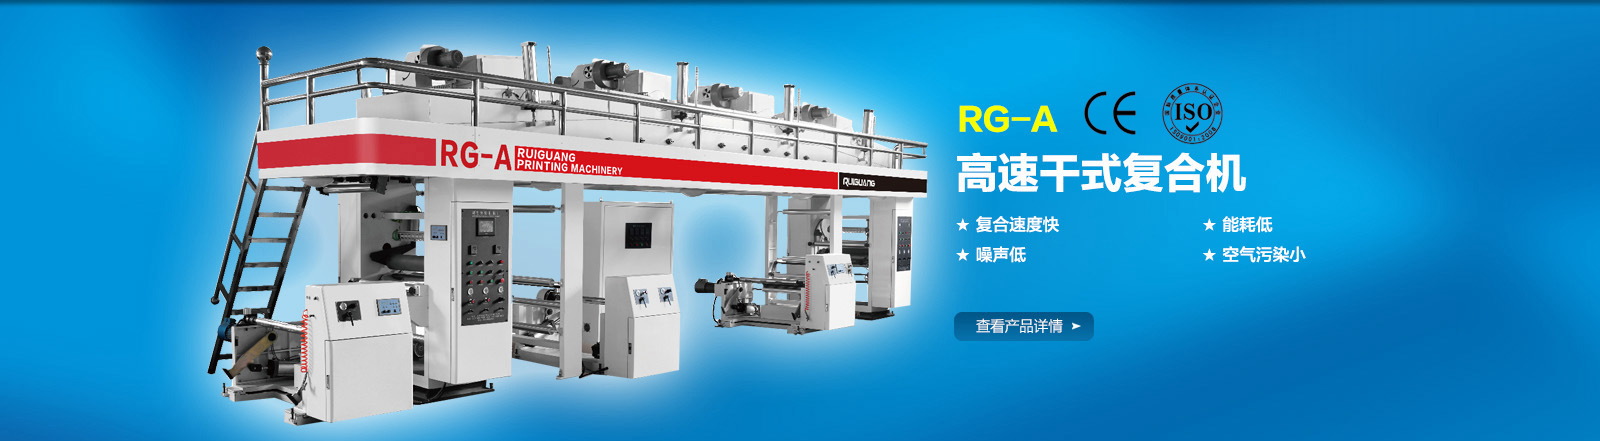 RG-A型高速干式复合机